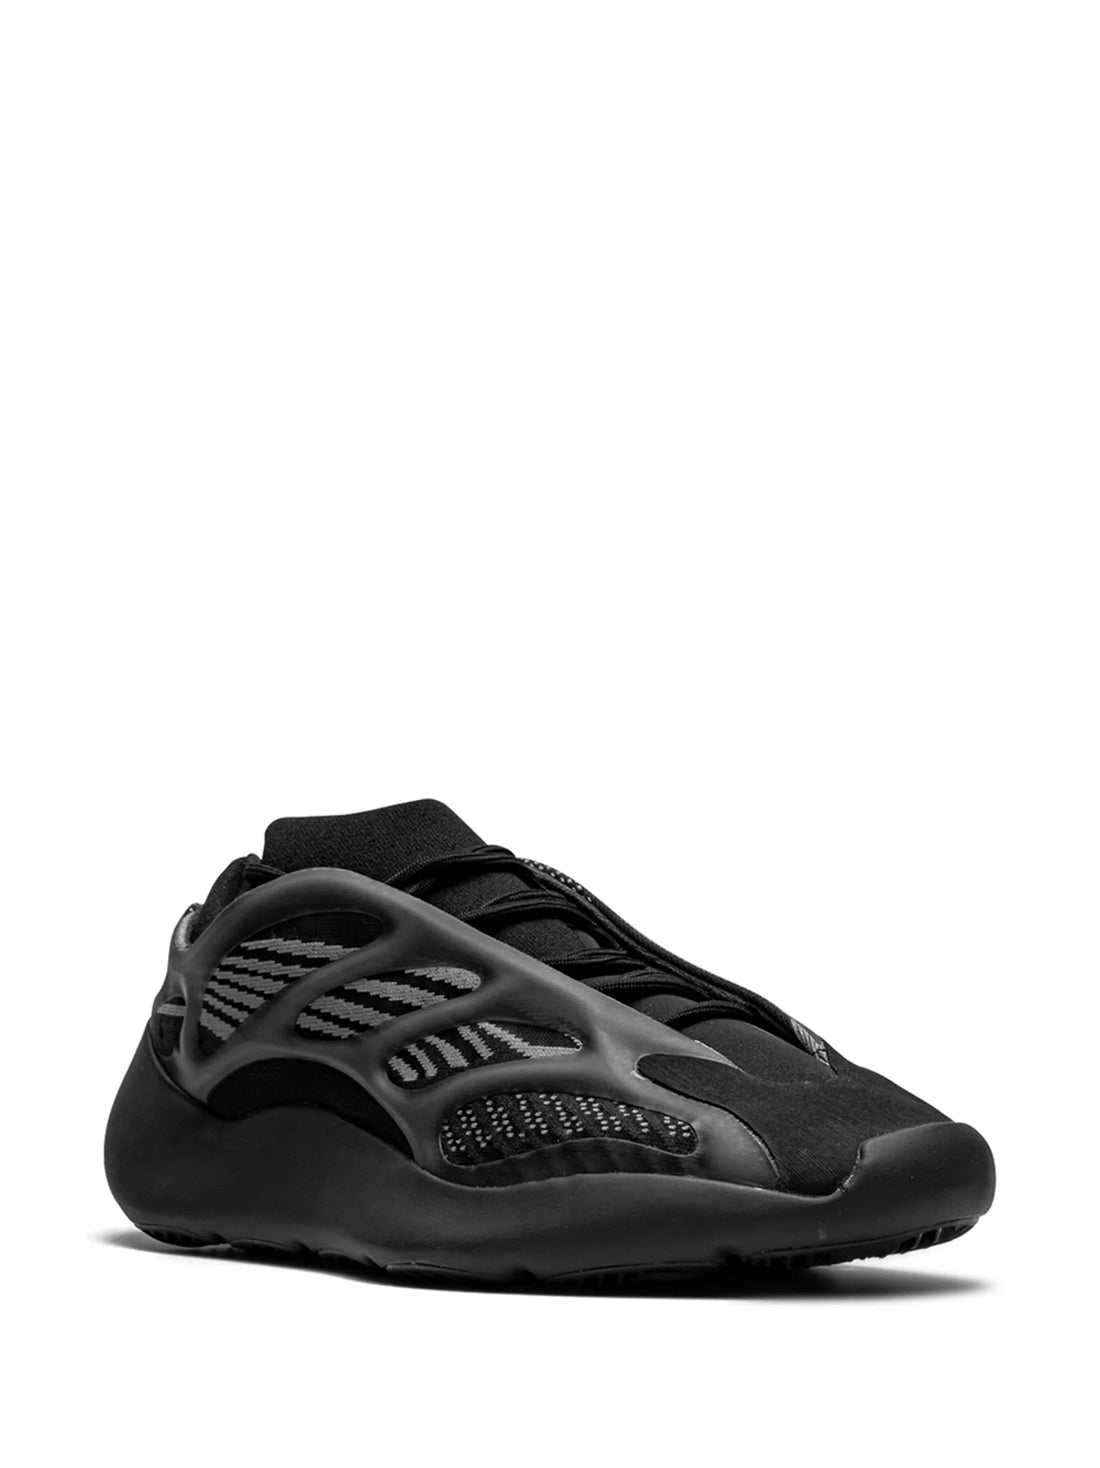 adidas Yeezy YEEZY 700 V3 "Alvah" sneakers